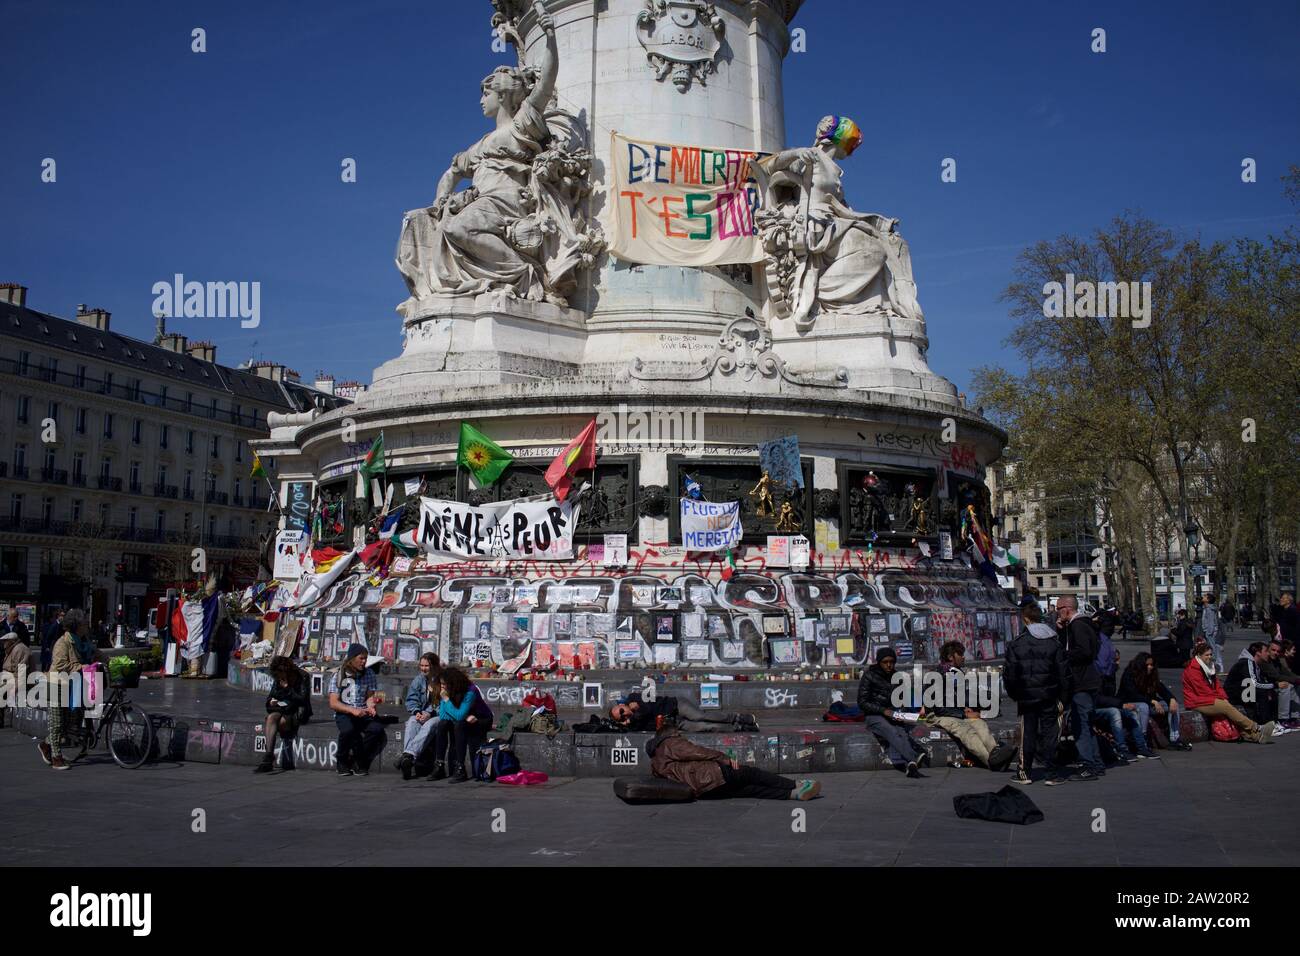 Personas sentadas a pasos de la estatua de Marianne frente a mensajes para recordar a las víctimas de los ataques de París y Bruselas, Place de la République, París, Francia - Abril 2016 Foto de stock